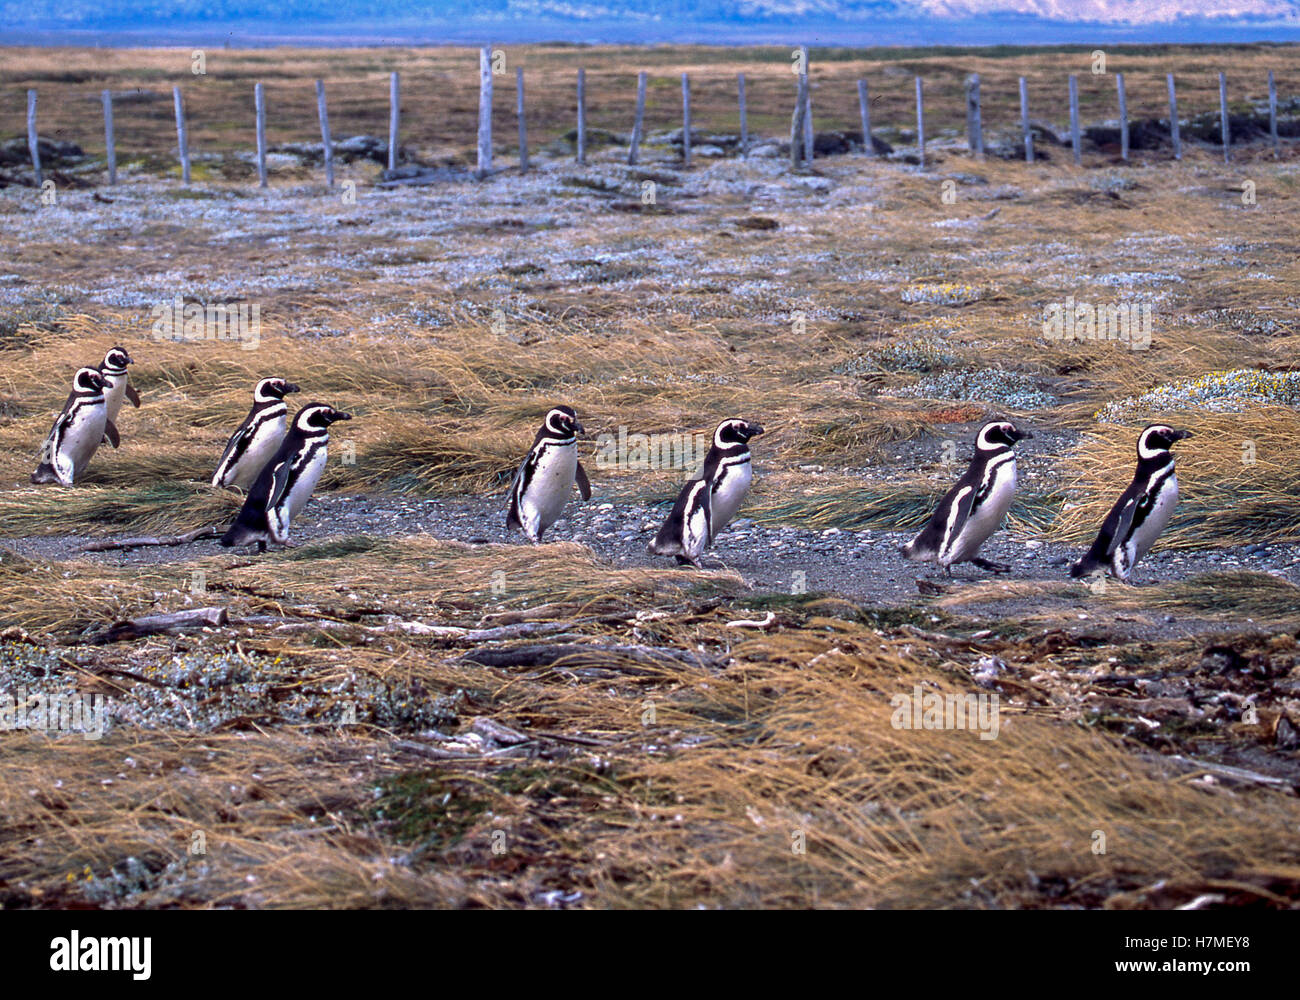 Regione di Magallanes, Cile. Il 22 febbraio, 2003. I pinguini di Magellano (Spheniscus magellanicus) in marzo a Otway Sound riserva dei pinguini in Cile, 40 miglia (65km) da Punta Arenas. Una popolare attrazione turistica, i pinguini vi ritorna ogni anno per la stagione degli amori. Essi sono stati nominati dopo l'esploratore portoghese Ferdinando Magellano, che hanno individuato gli uccelli nel 1520. © Arnold Drapkin/ZUMA filo/Alamy Live News Foto Stock